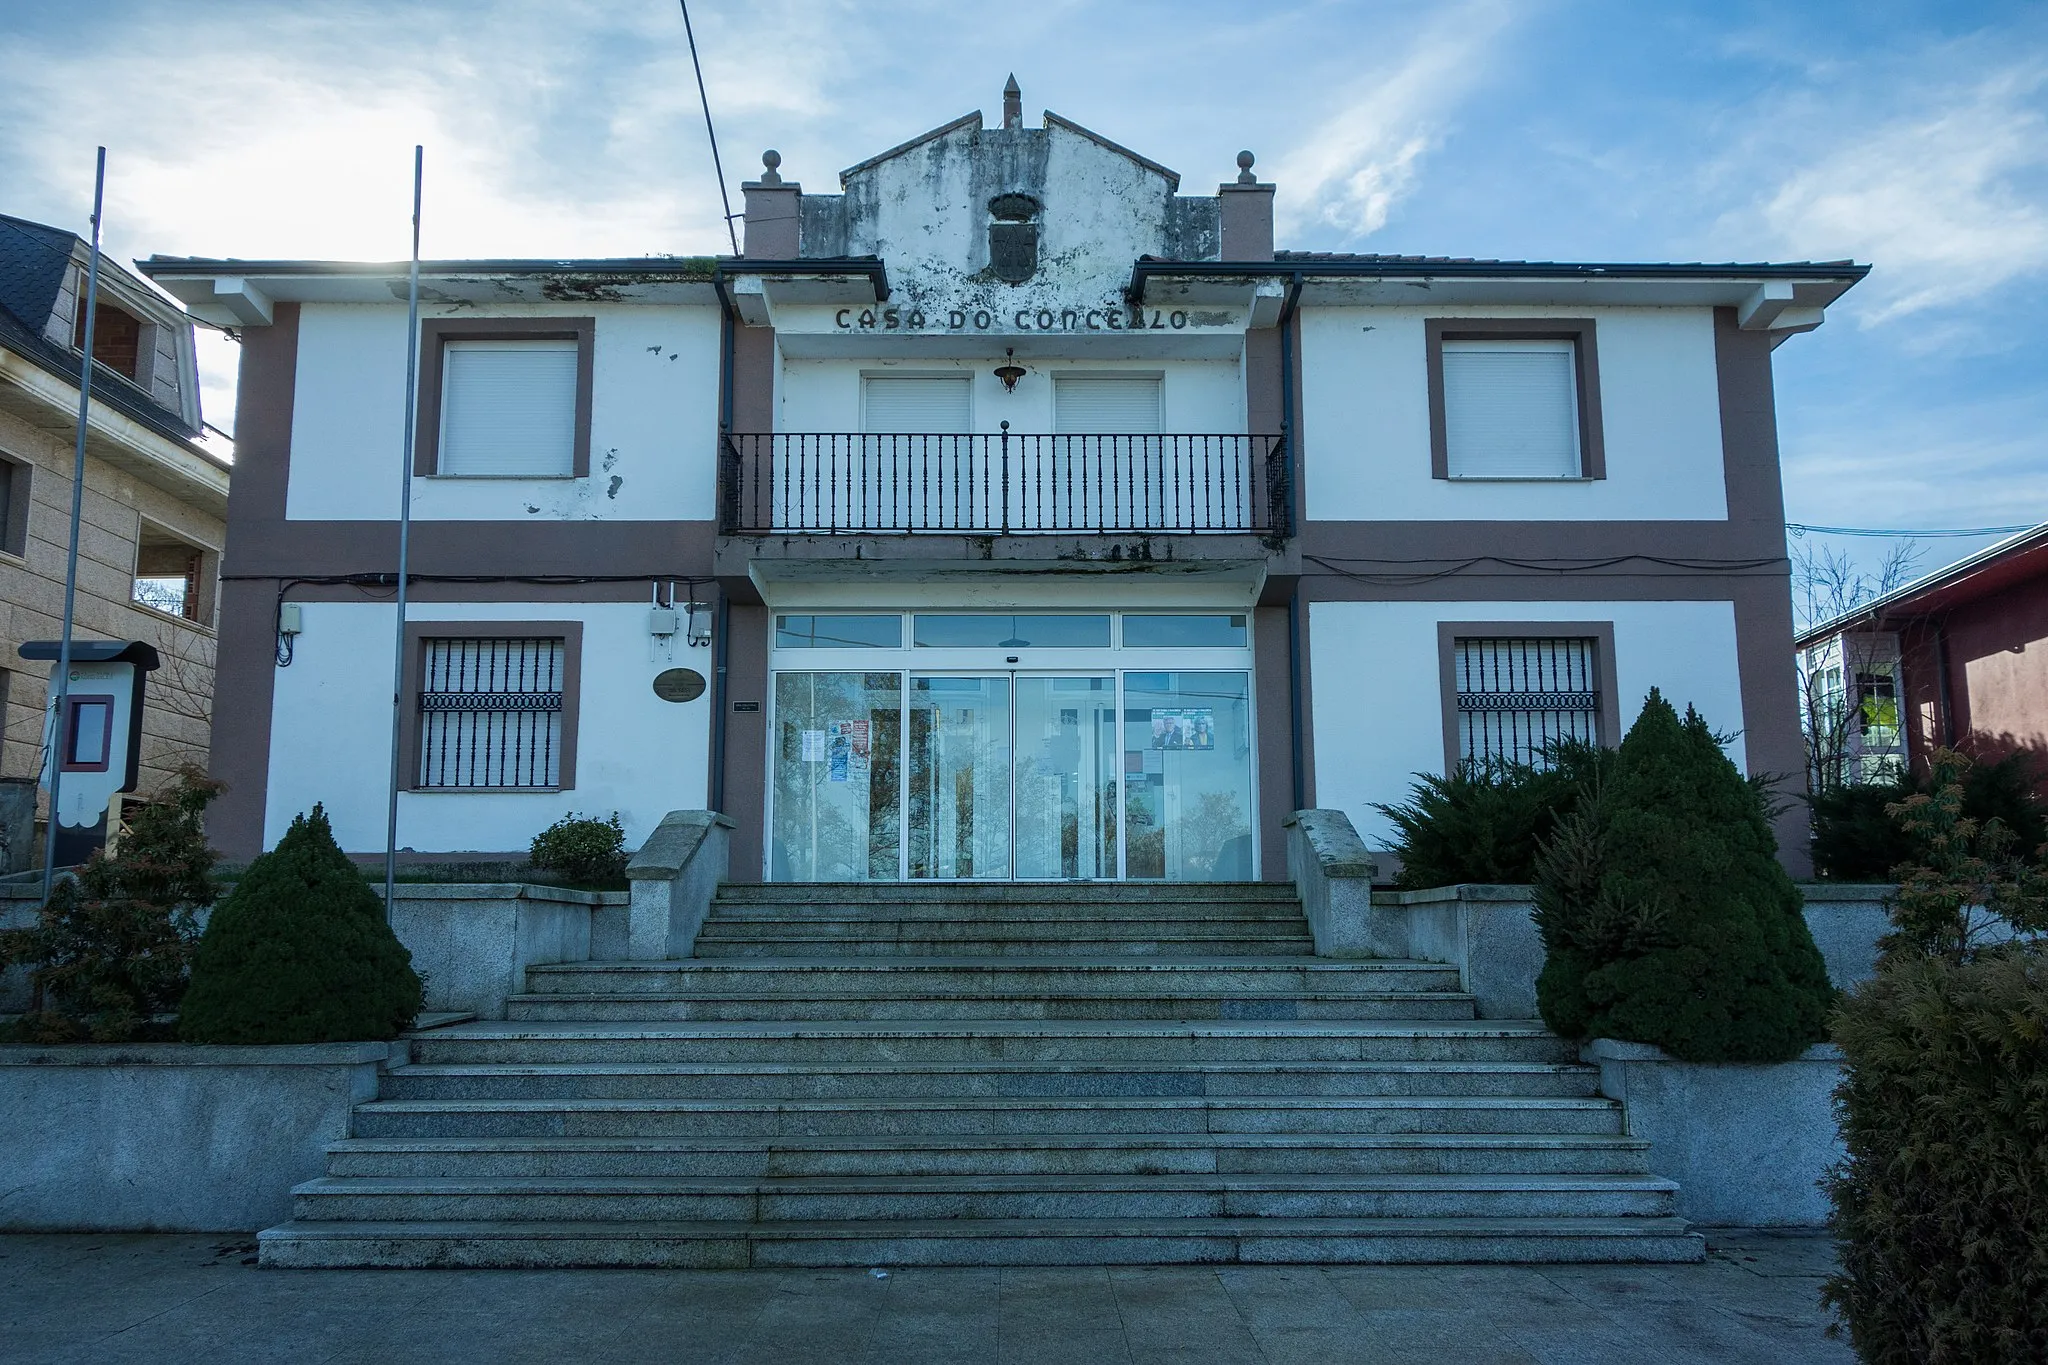 Photo showing: Casa do concello, Paradela, Lugo